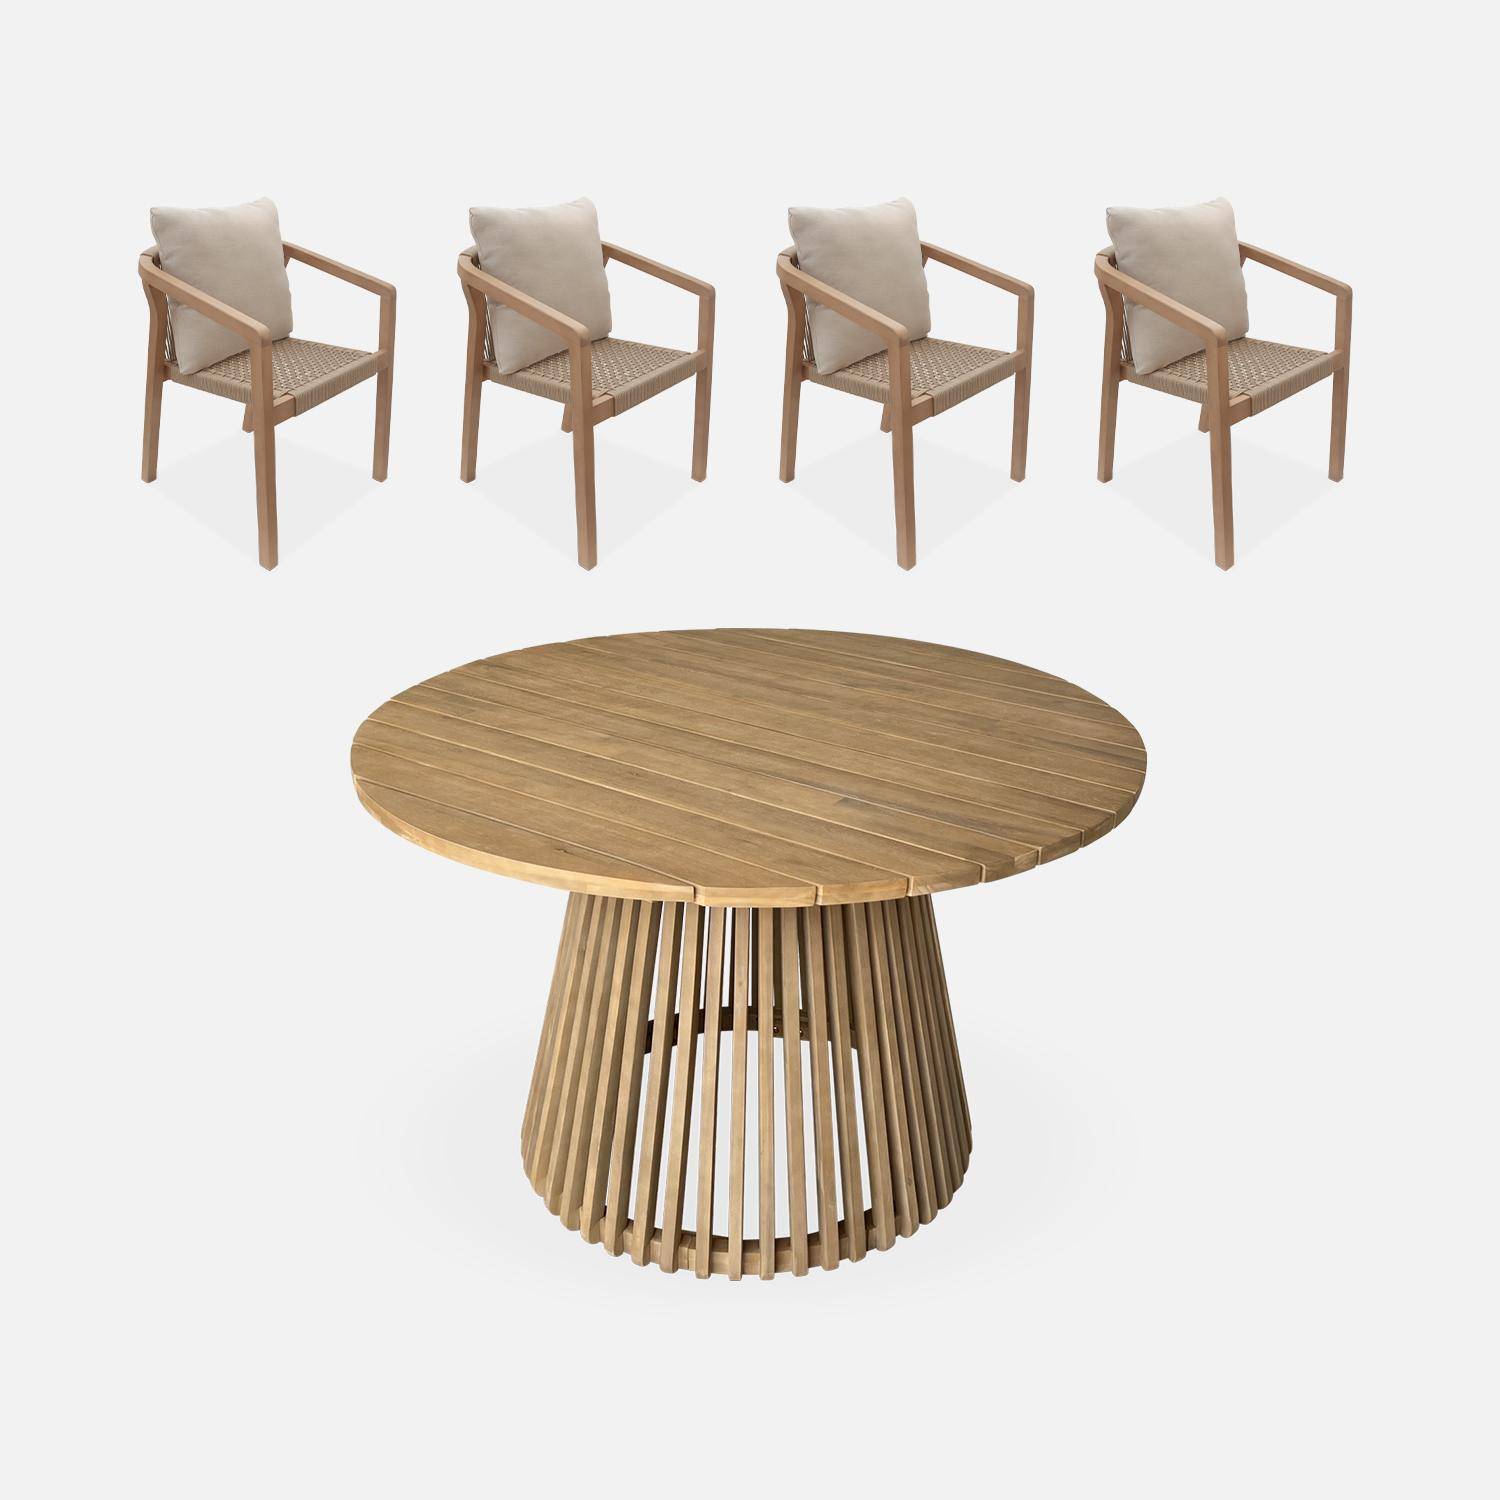 Table à manger bois d'acacia ronde, intérieur / extérieur + 4 chaises en bois et corde beige Photo1